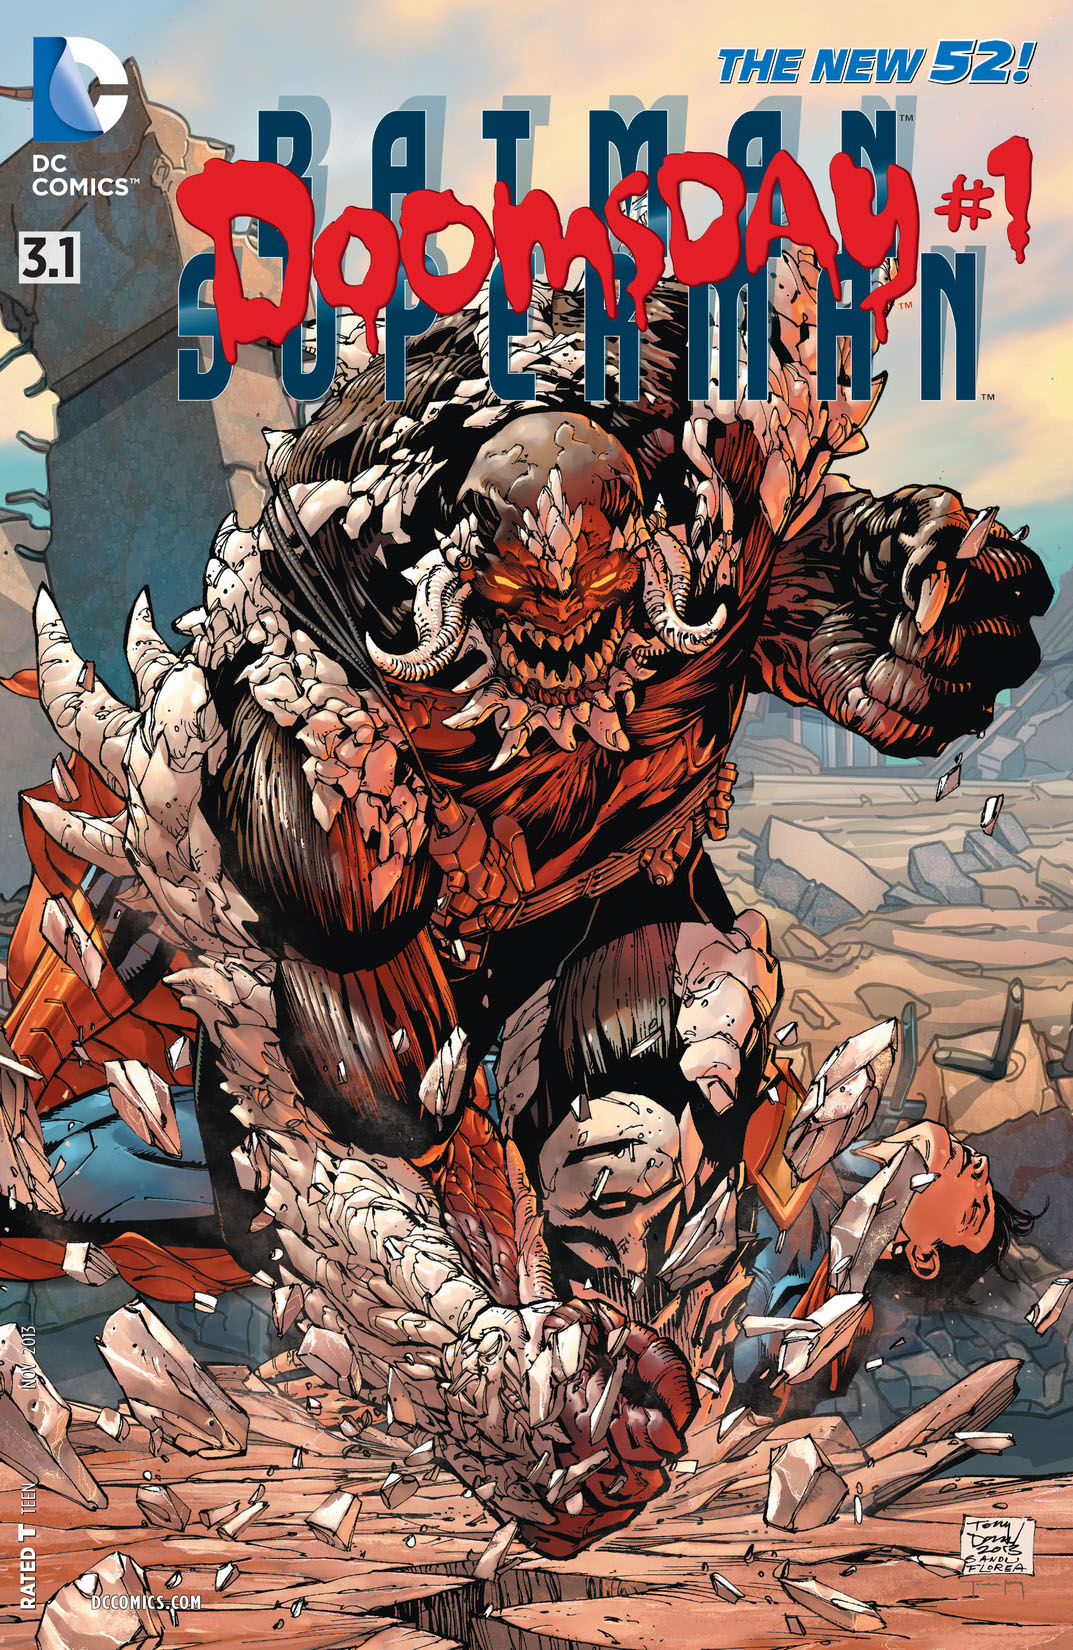 Batman/Superman feat Doomsday (2013-) #3.1 preview images